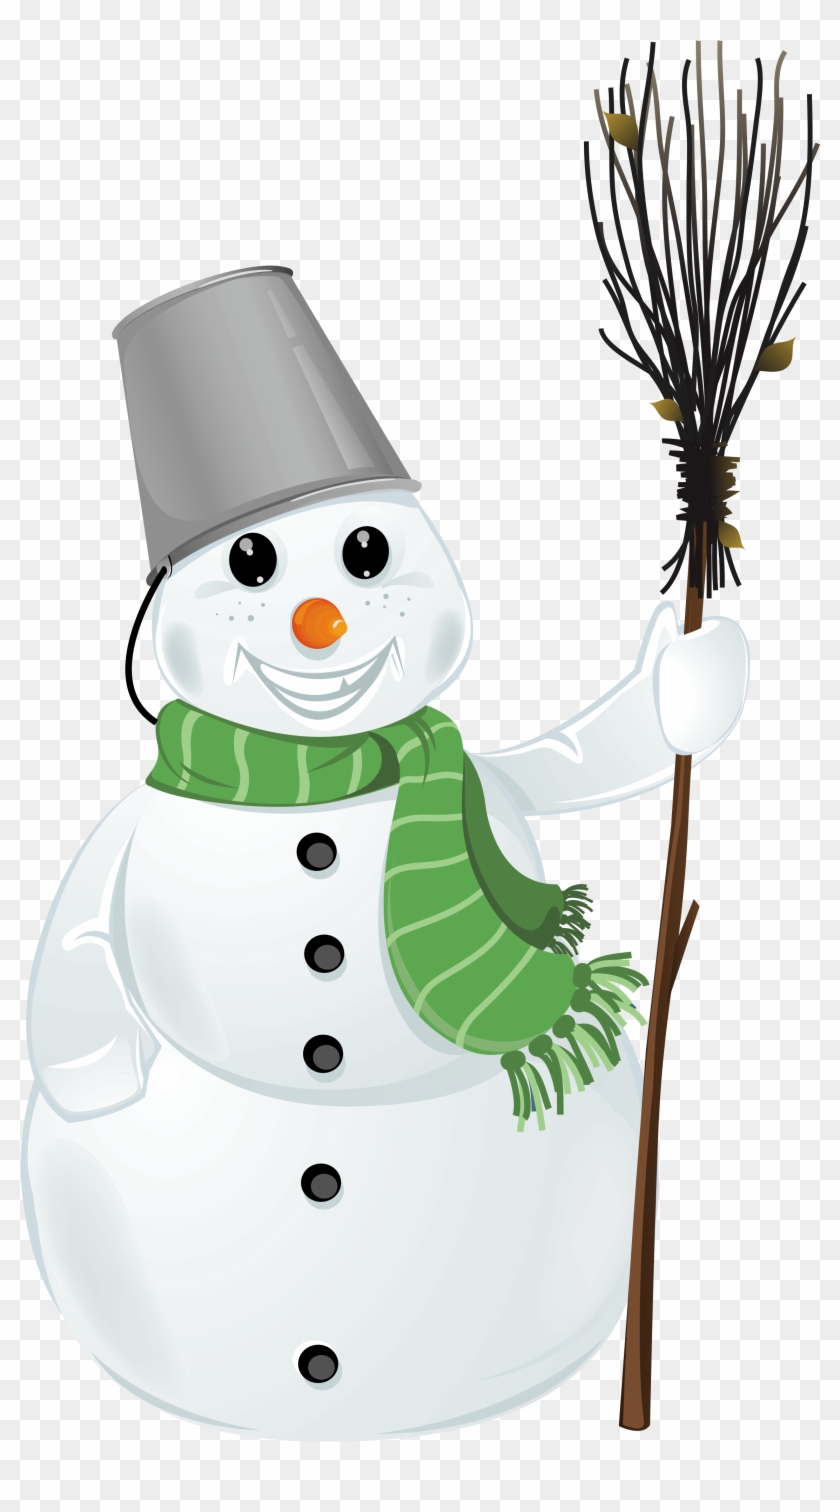 Snowman Clipart Transparent - Transparent Snowman Clipart #629208